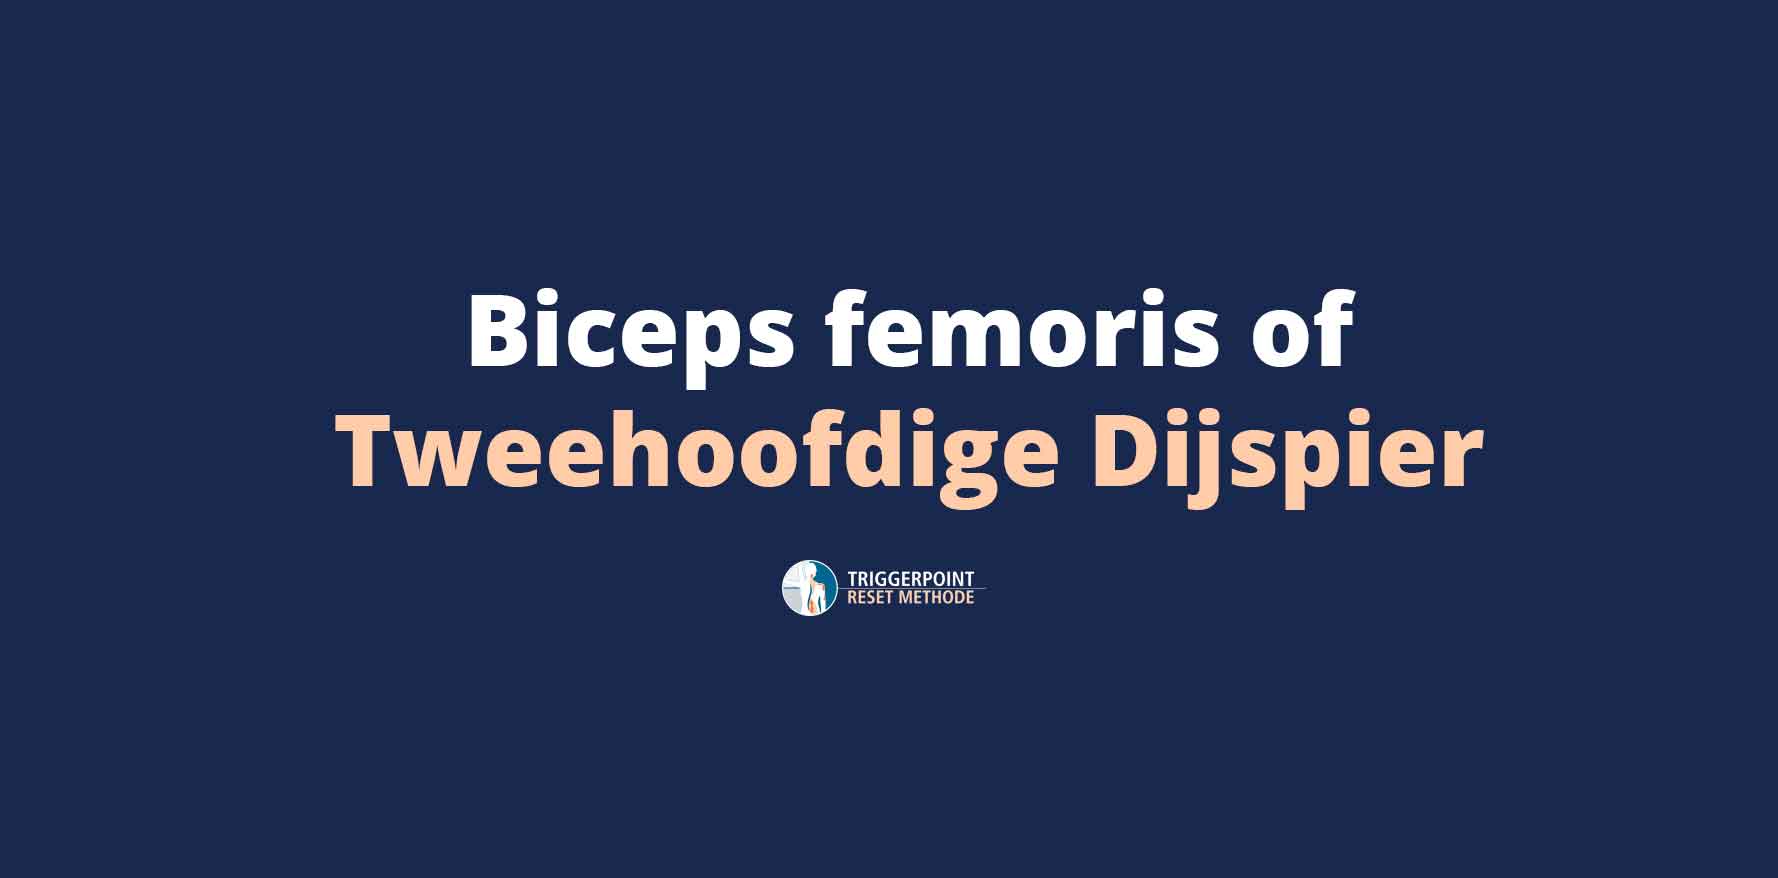 Biceps femoris of Tweehoofdige Dijspier